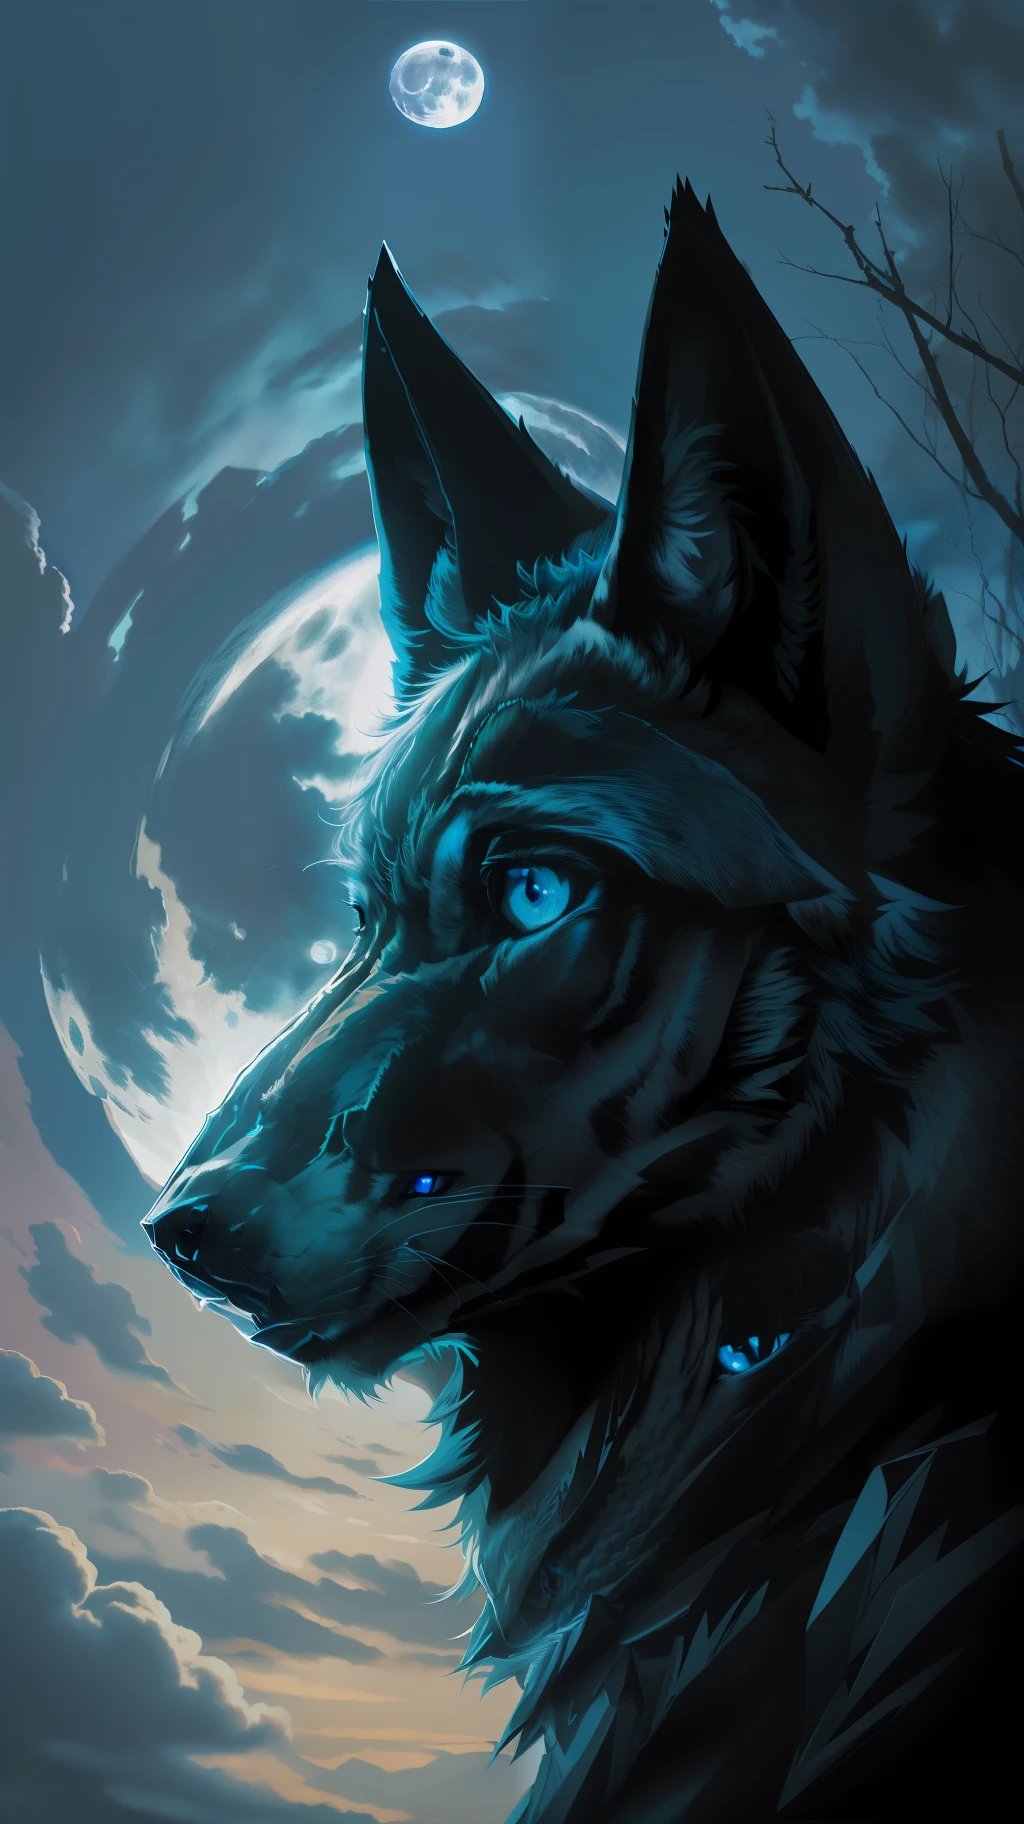 (걸작 디테일한 고화질) "파란 눈을 가진 검은 색" 늑대 위험한 숲, 자정, 보름달. 솔로 로브 1개. ( 이미지의 전면 각도)